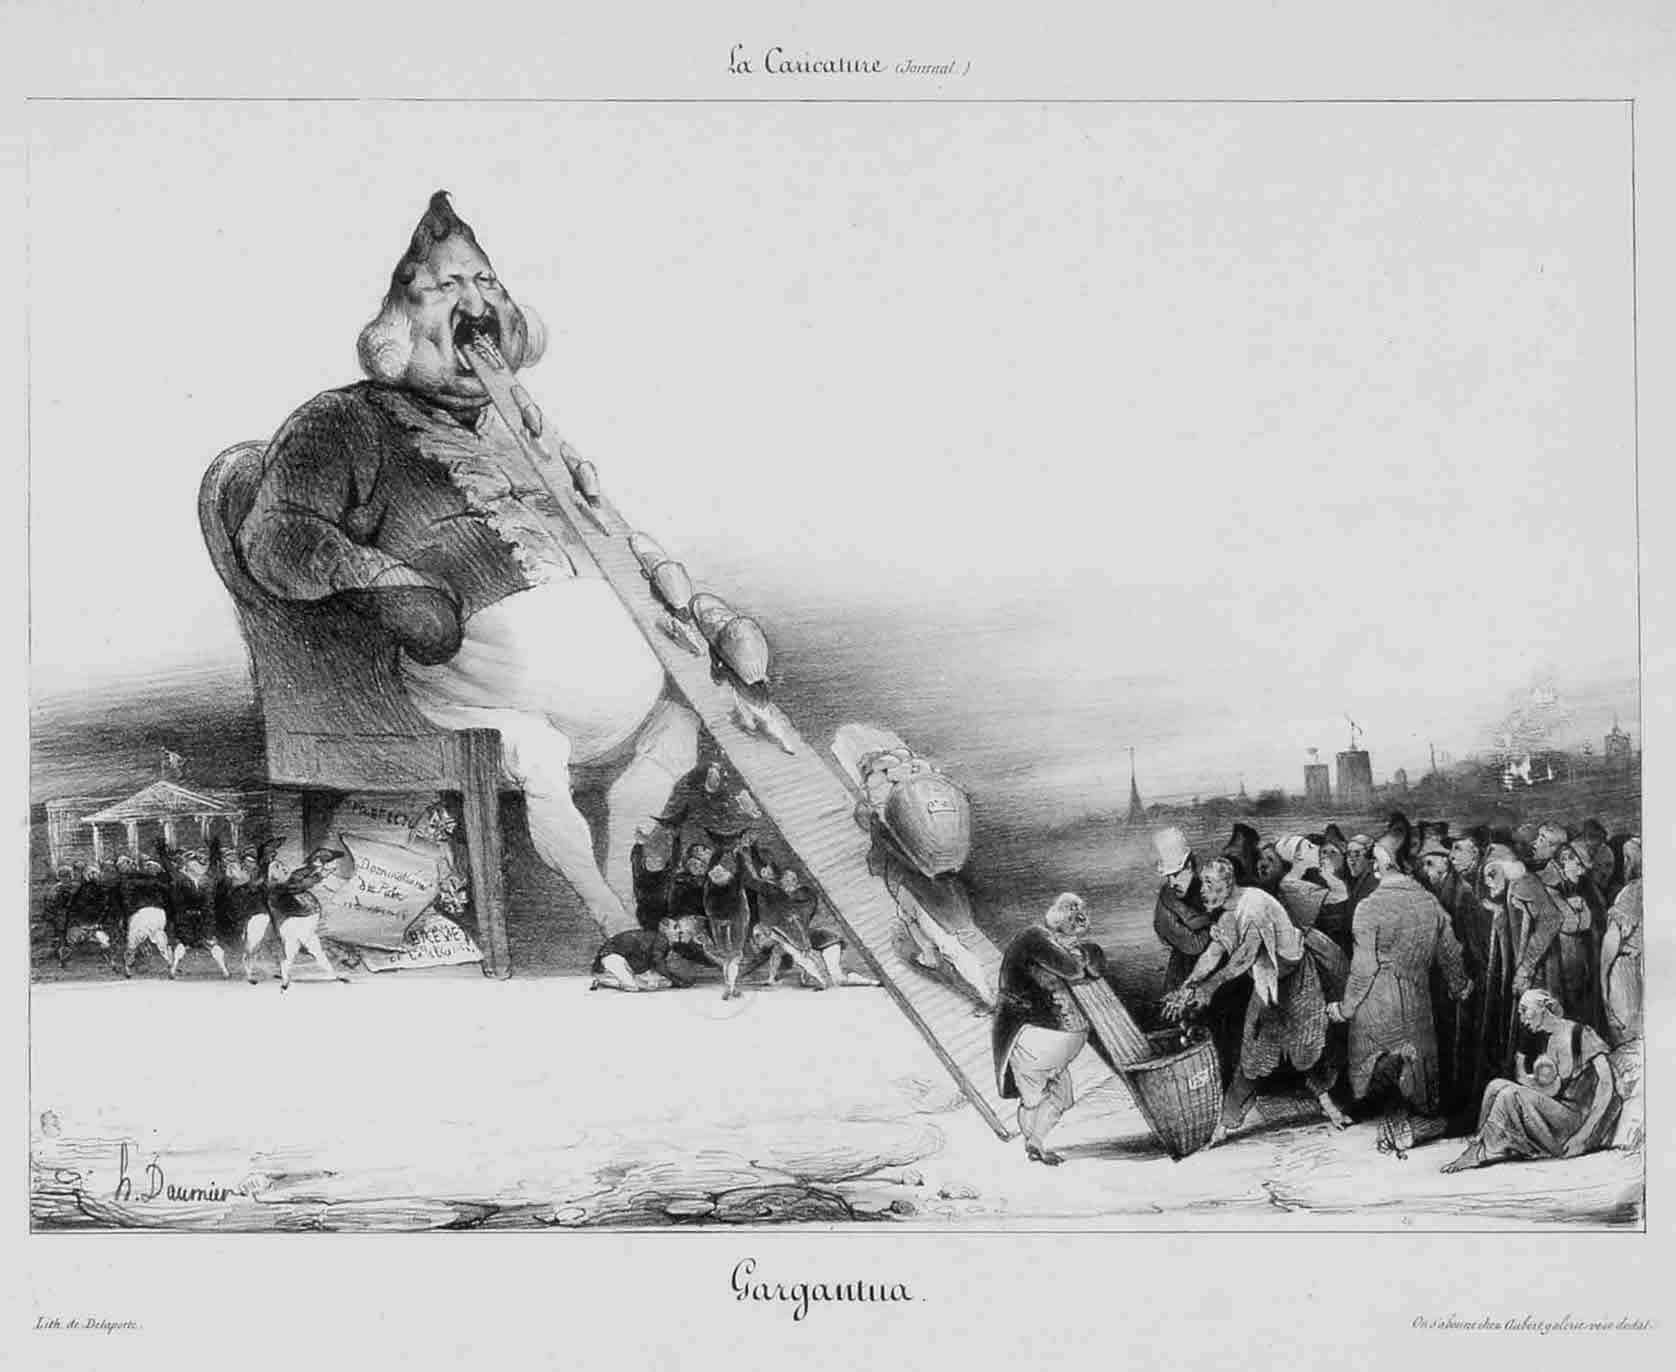 Gargantua. (1831)